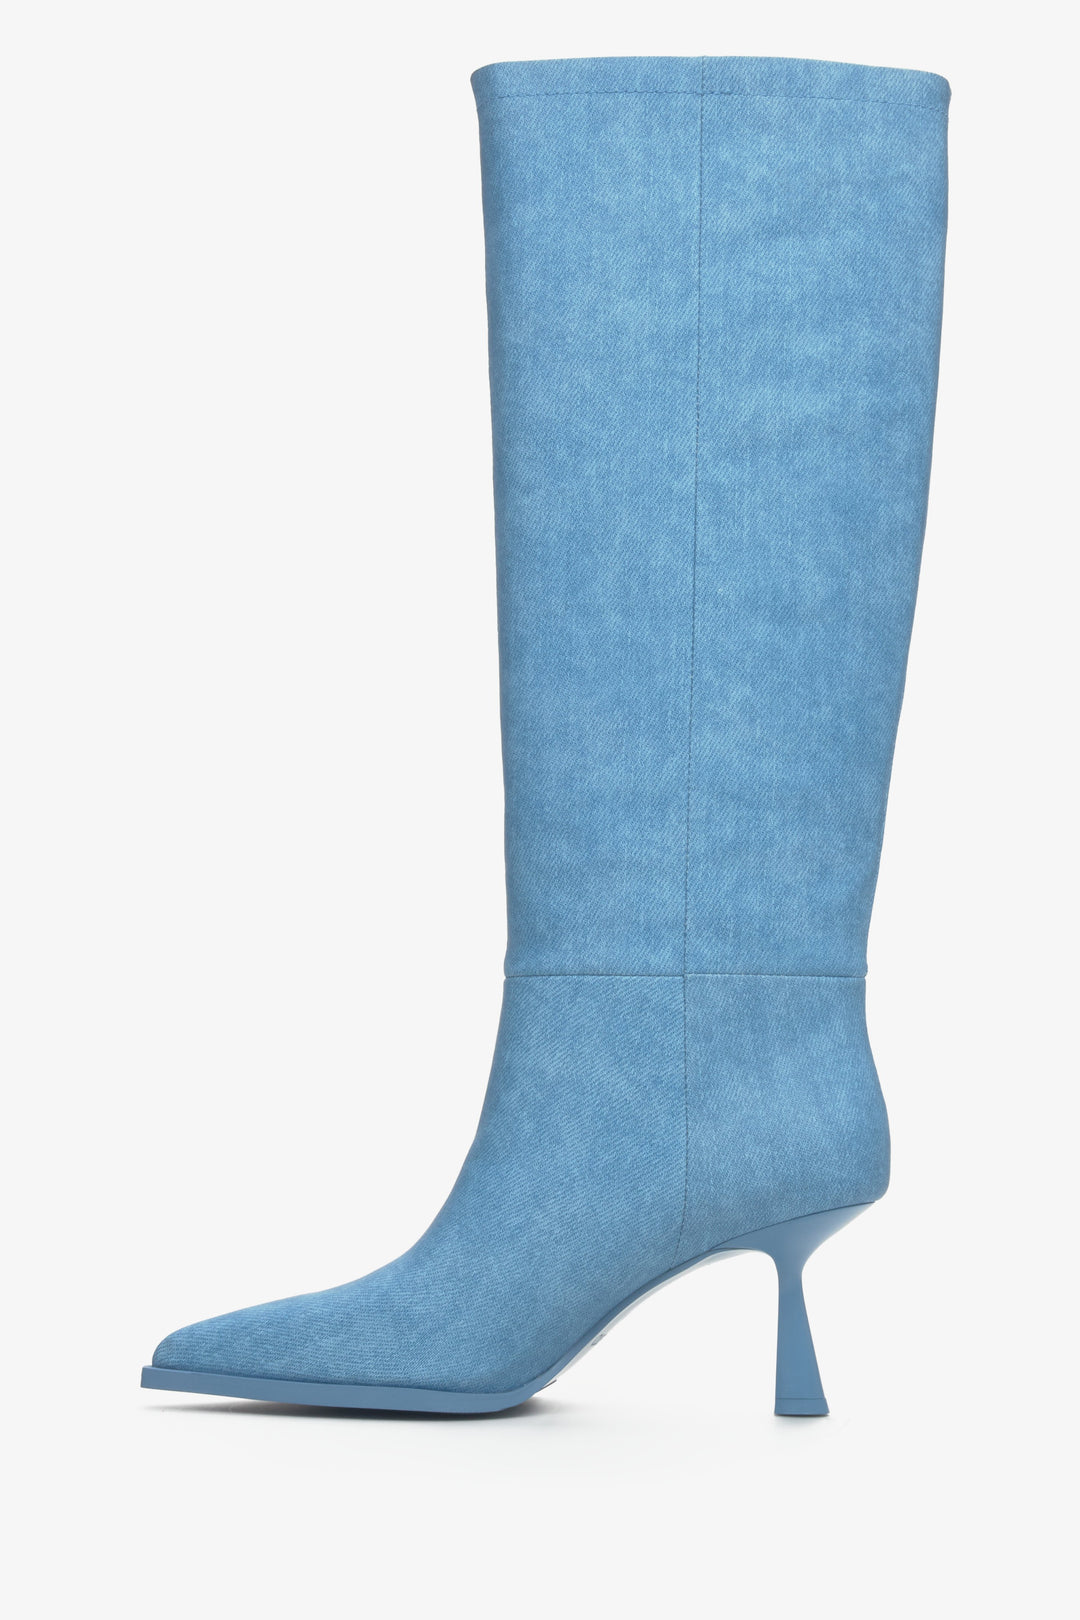 Niebieskie wysokie kozaki damskie na obcasie kielichowym Estro - profil buta.